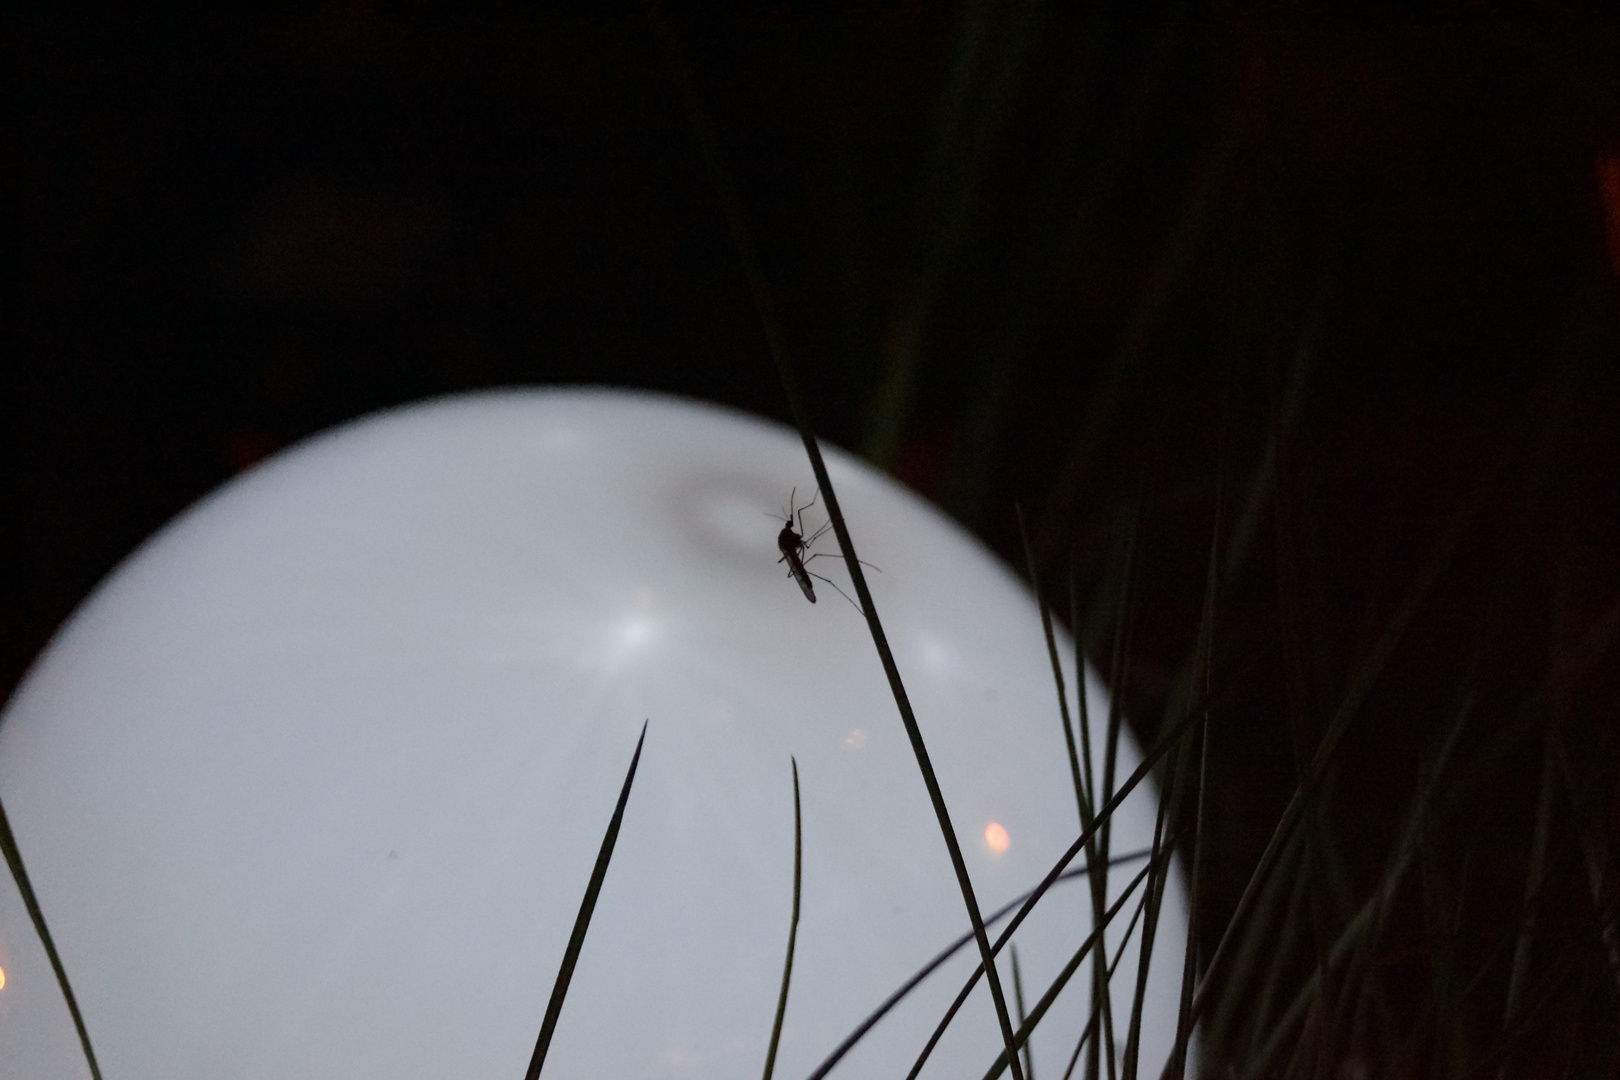 Mücke vor einer Solarlampe